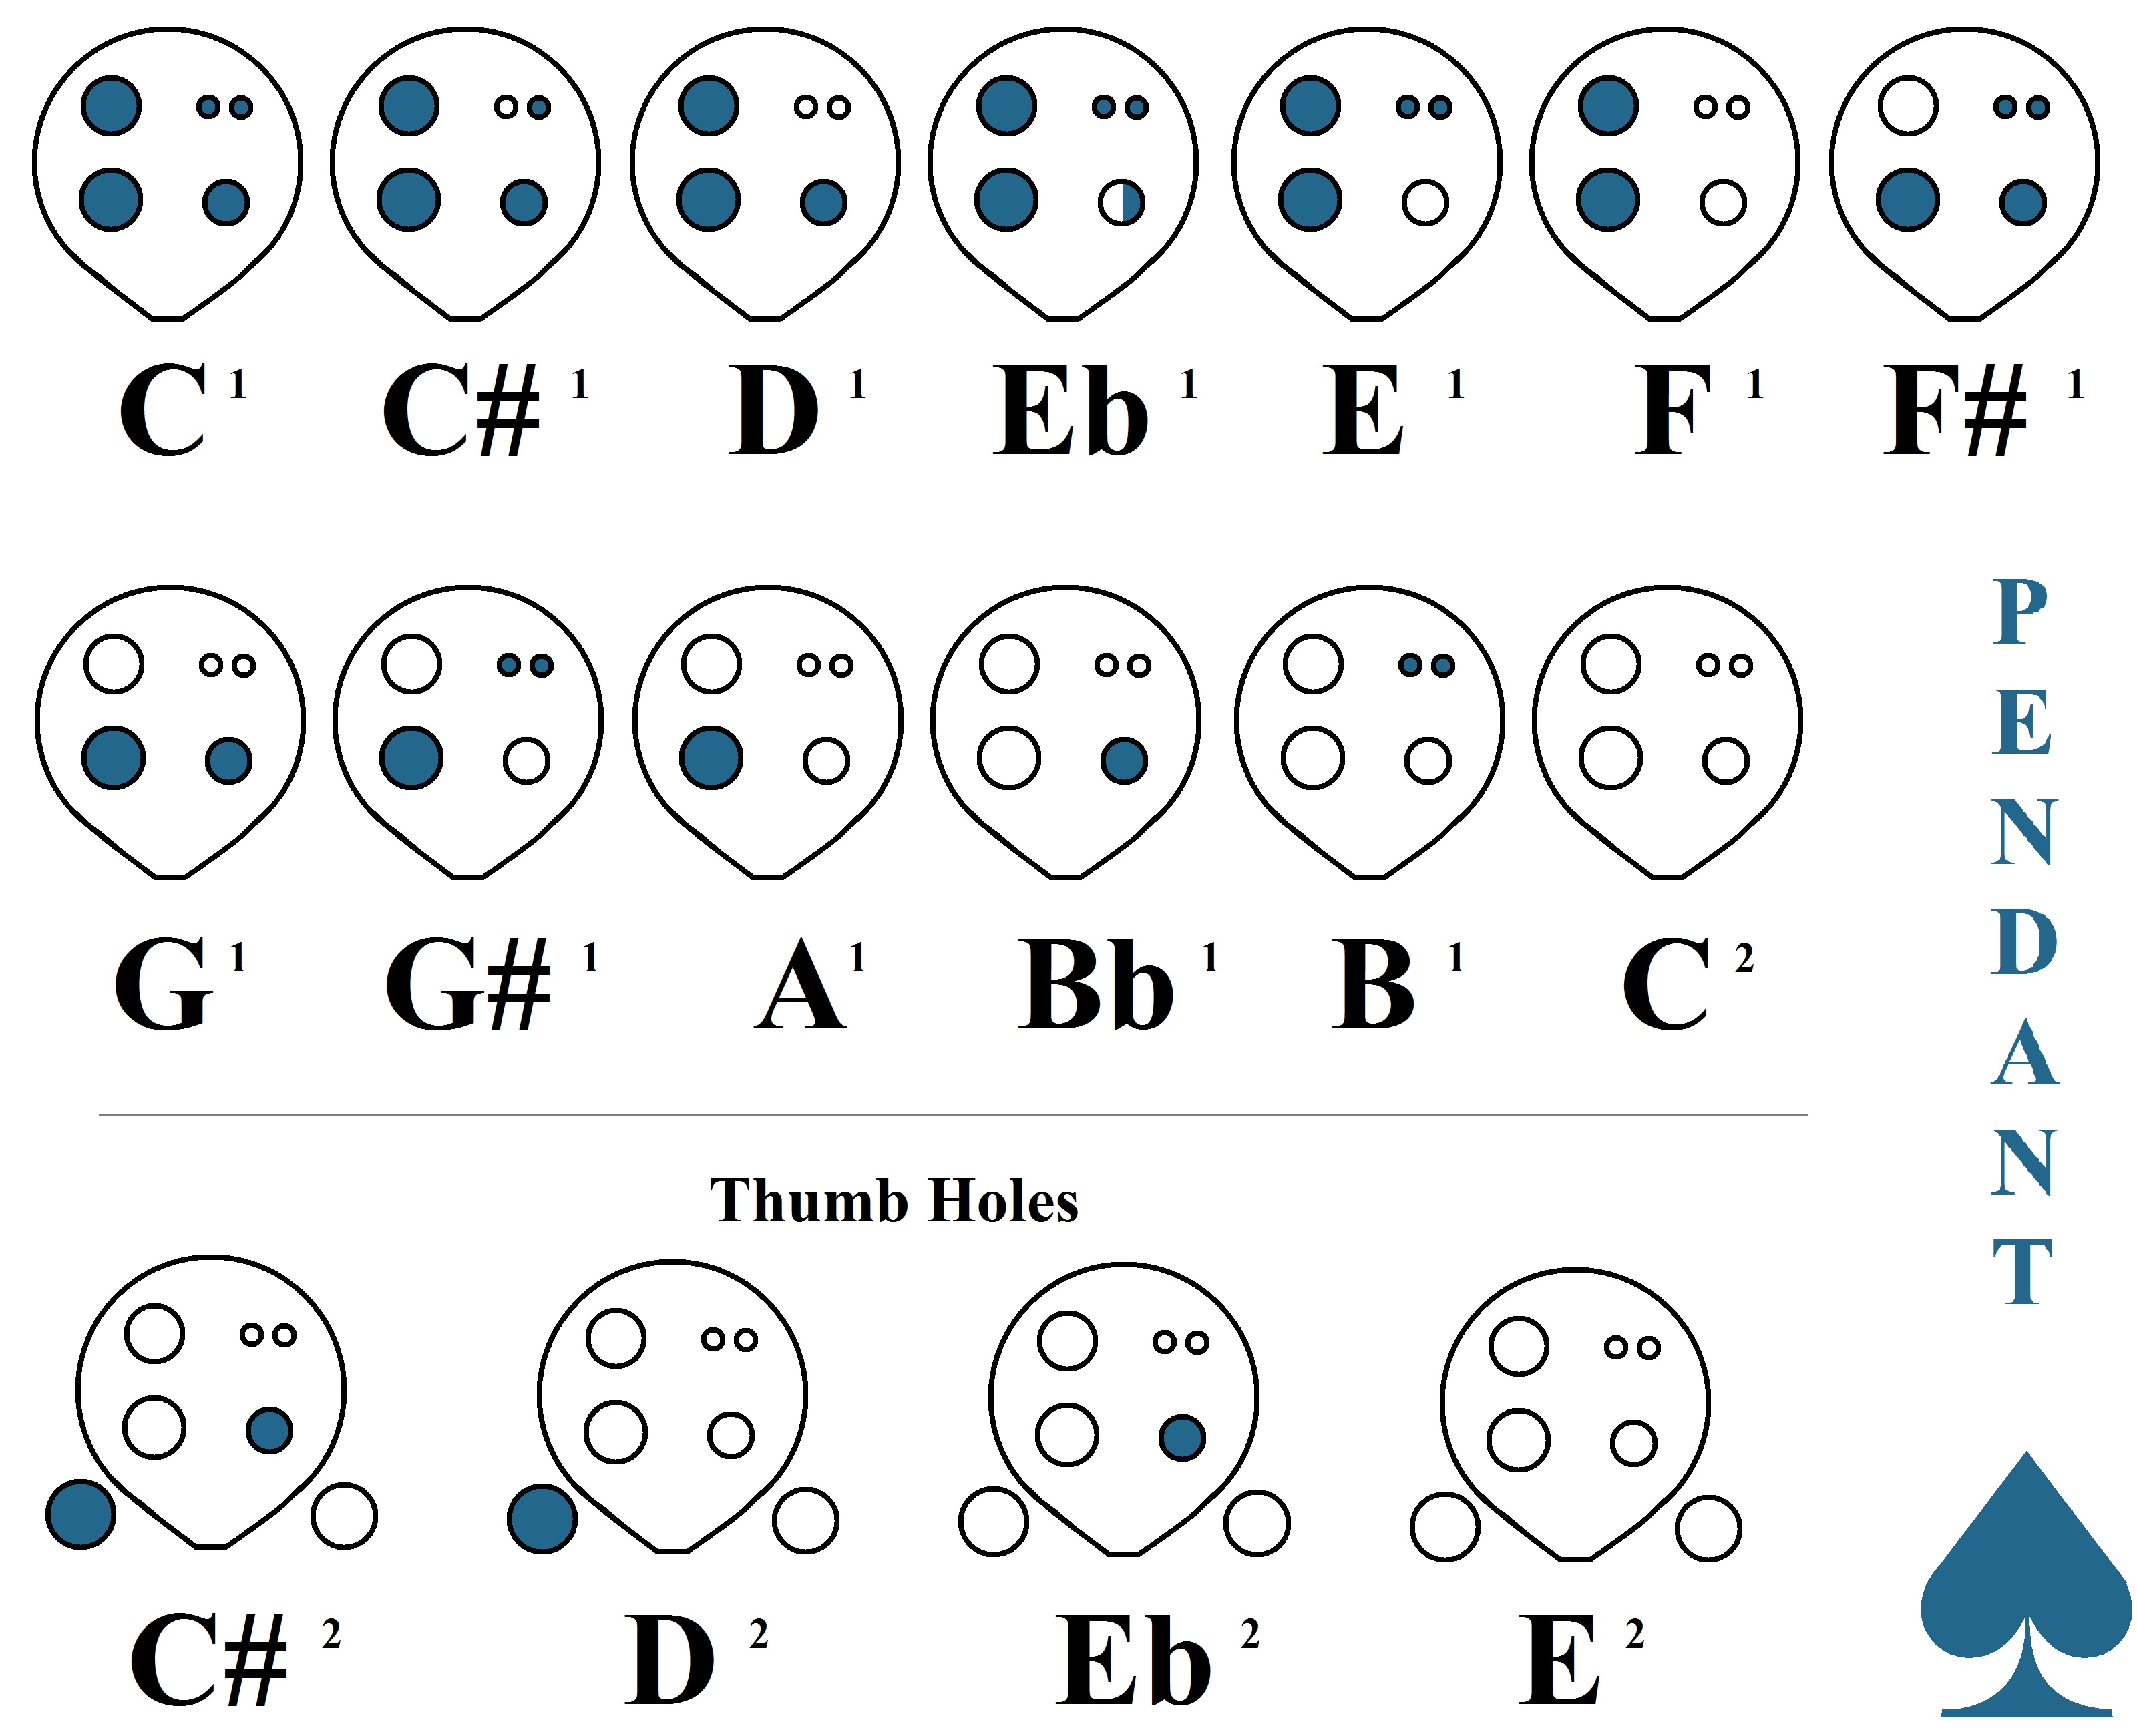 6 Hole Ocarina Chart